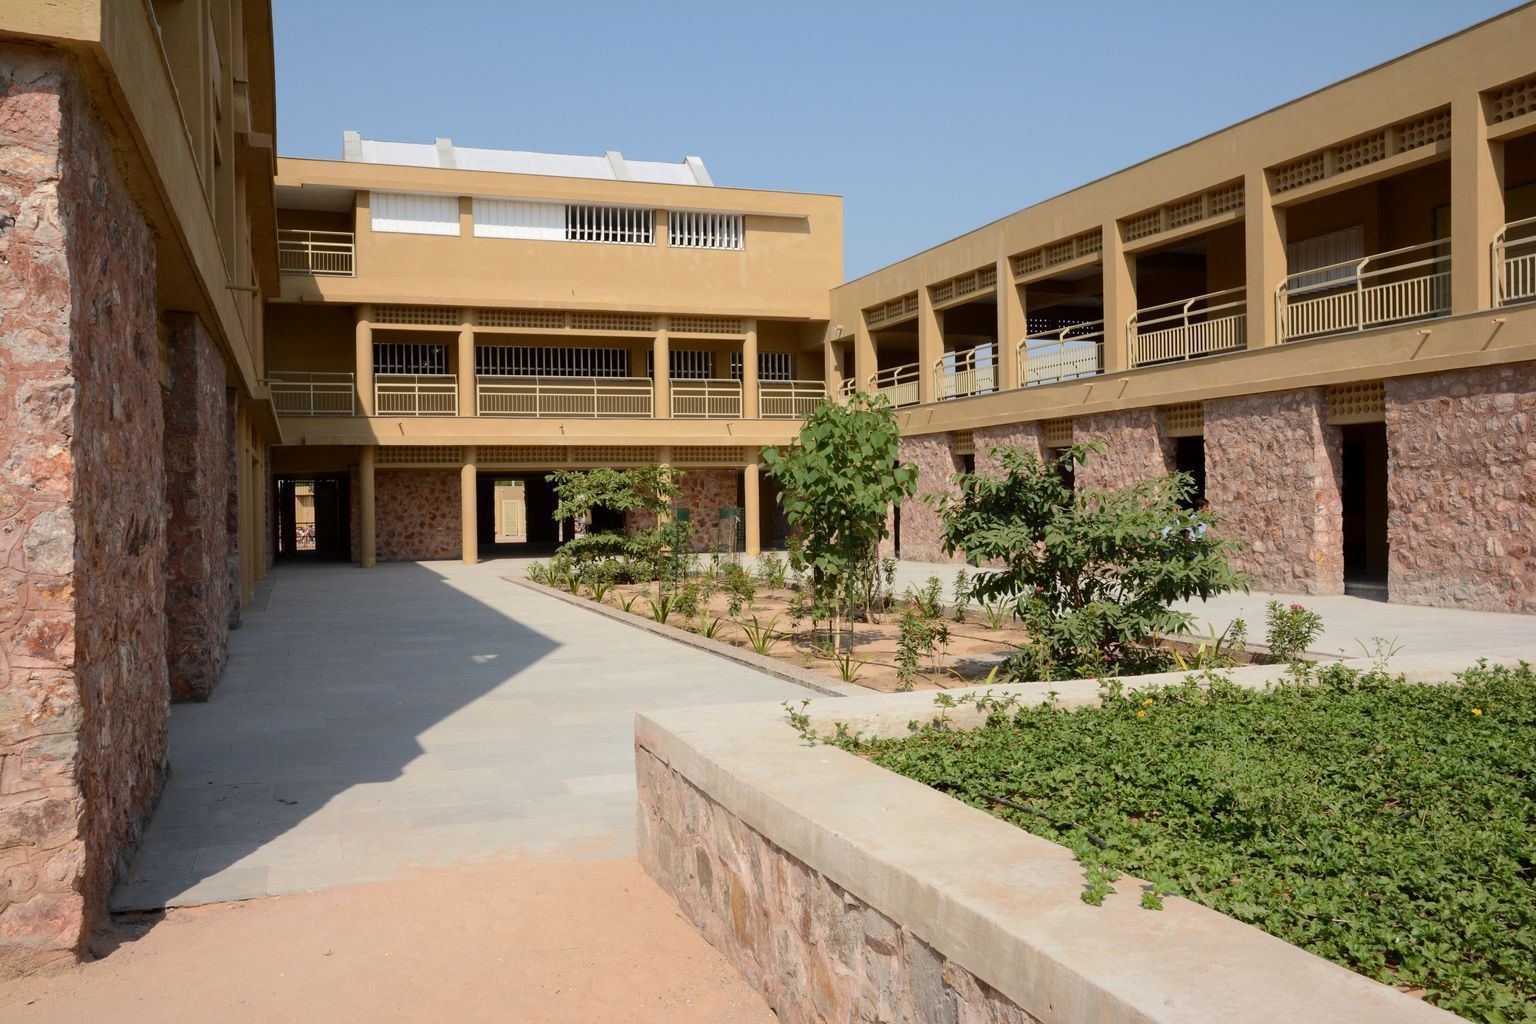 Shardashish School in Chappi designed by Indigo Architects